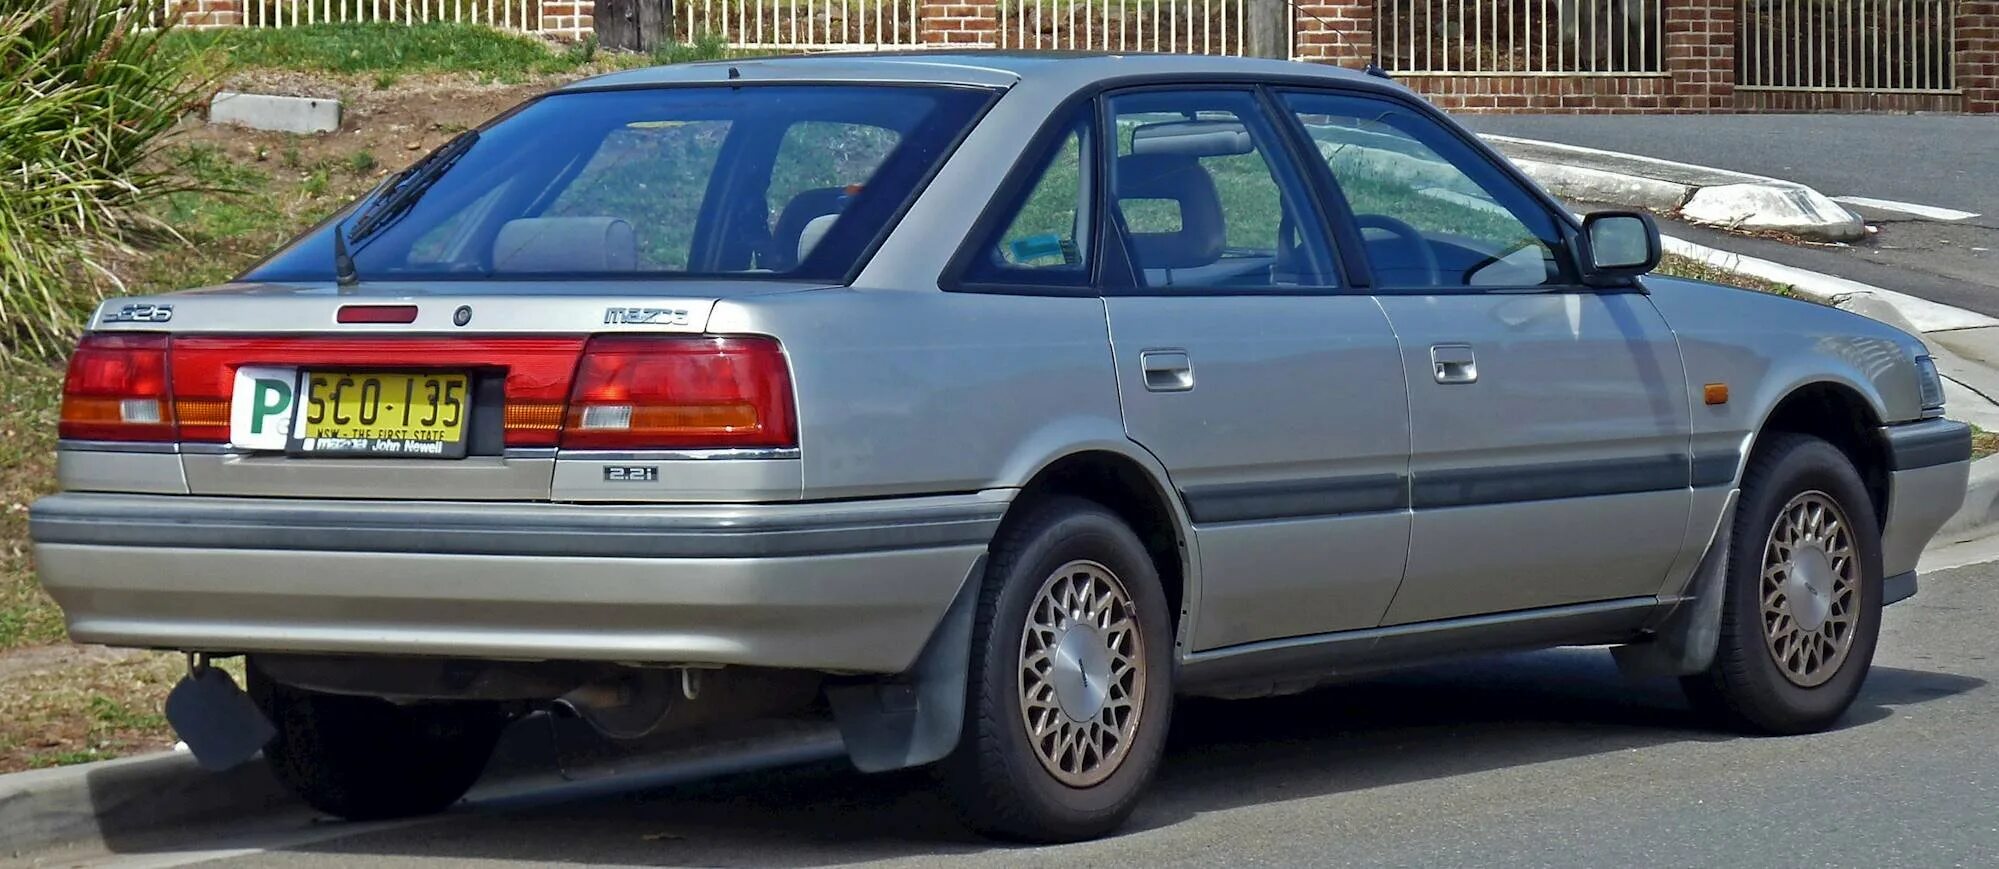 Mazda 626 GD 1990. Mazda 626 III. Мазда 626 1991 хэтчбек. Mazda 626 хэтчбек 1990. Мазда 626 хэтчбек